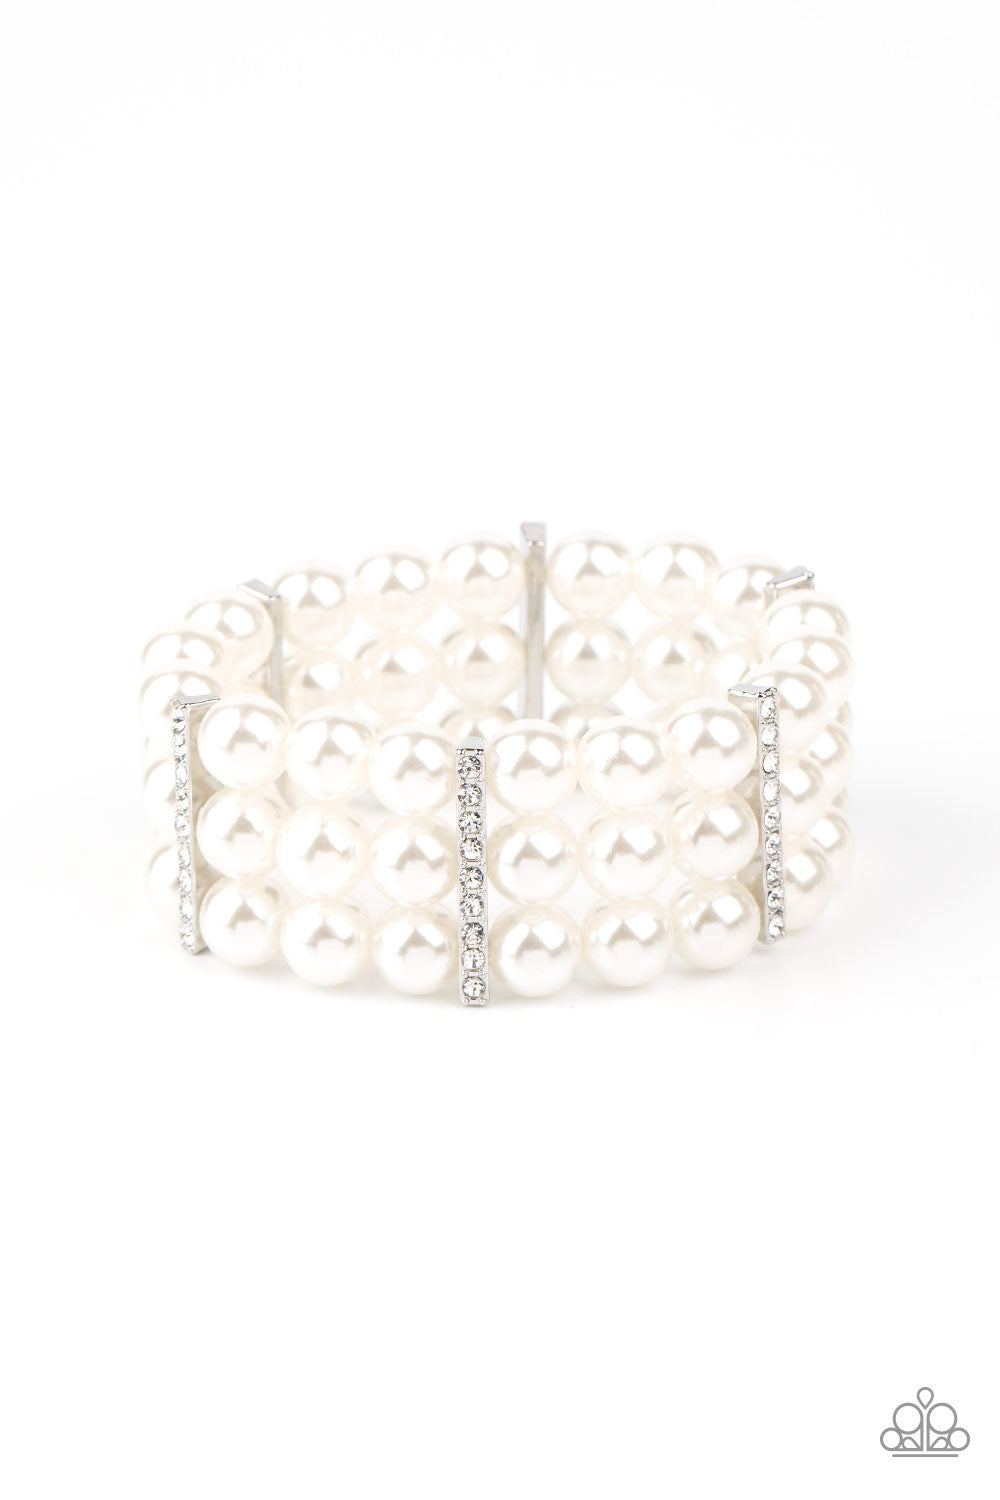 Modern Day Majesty Bracelet - White